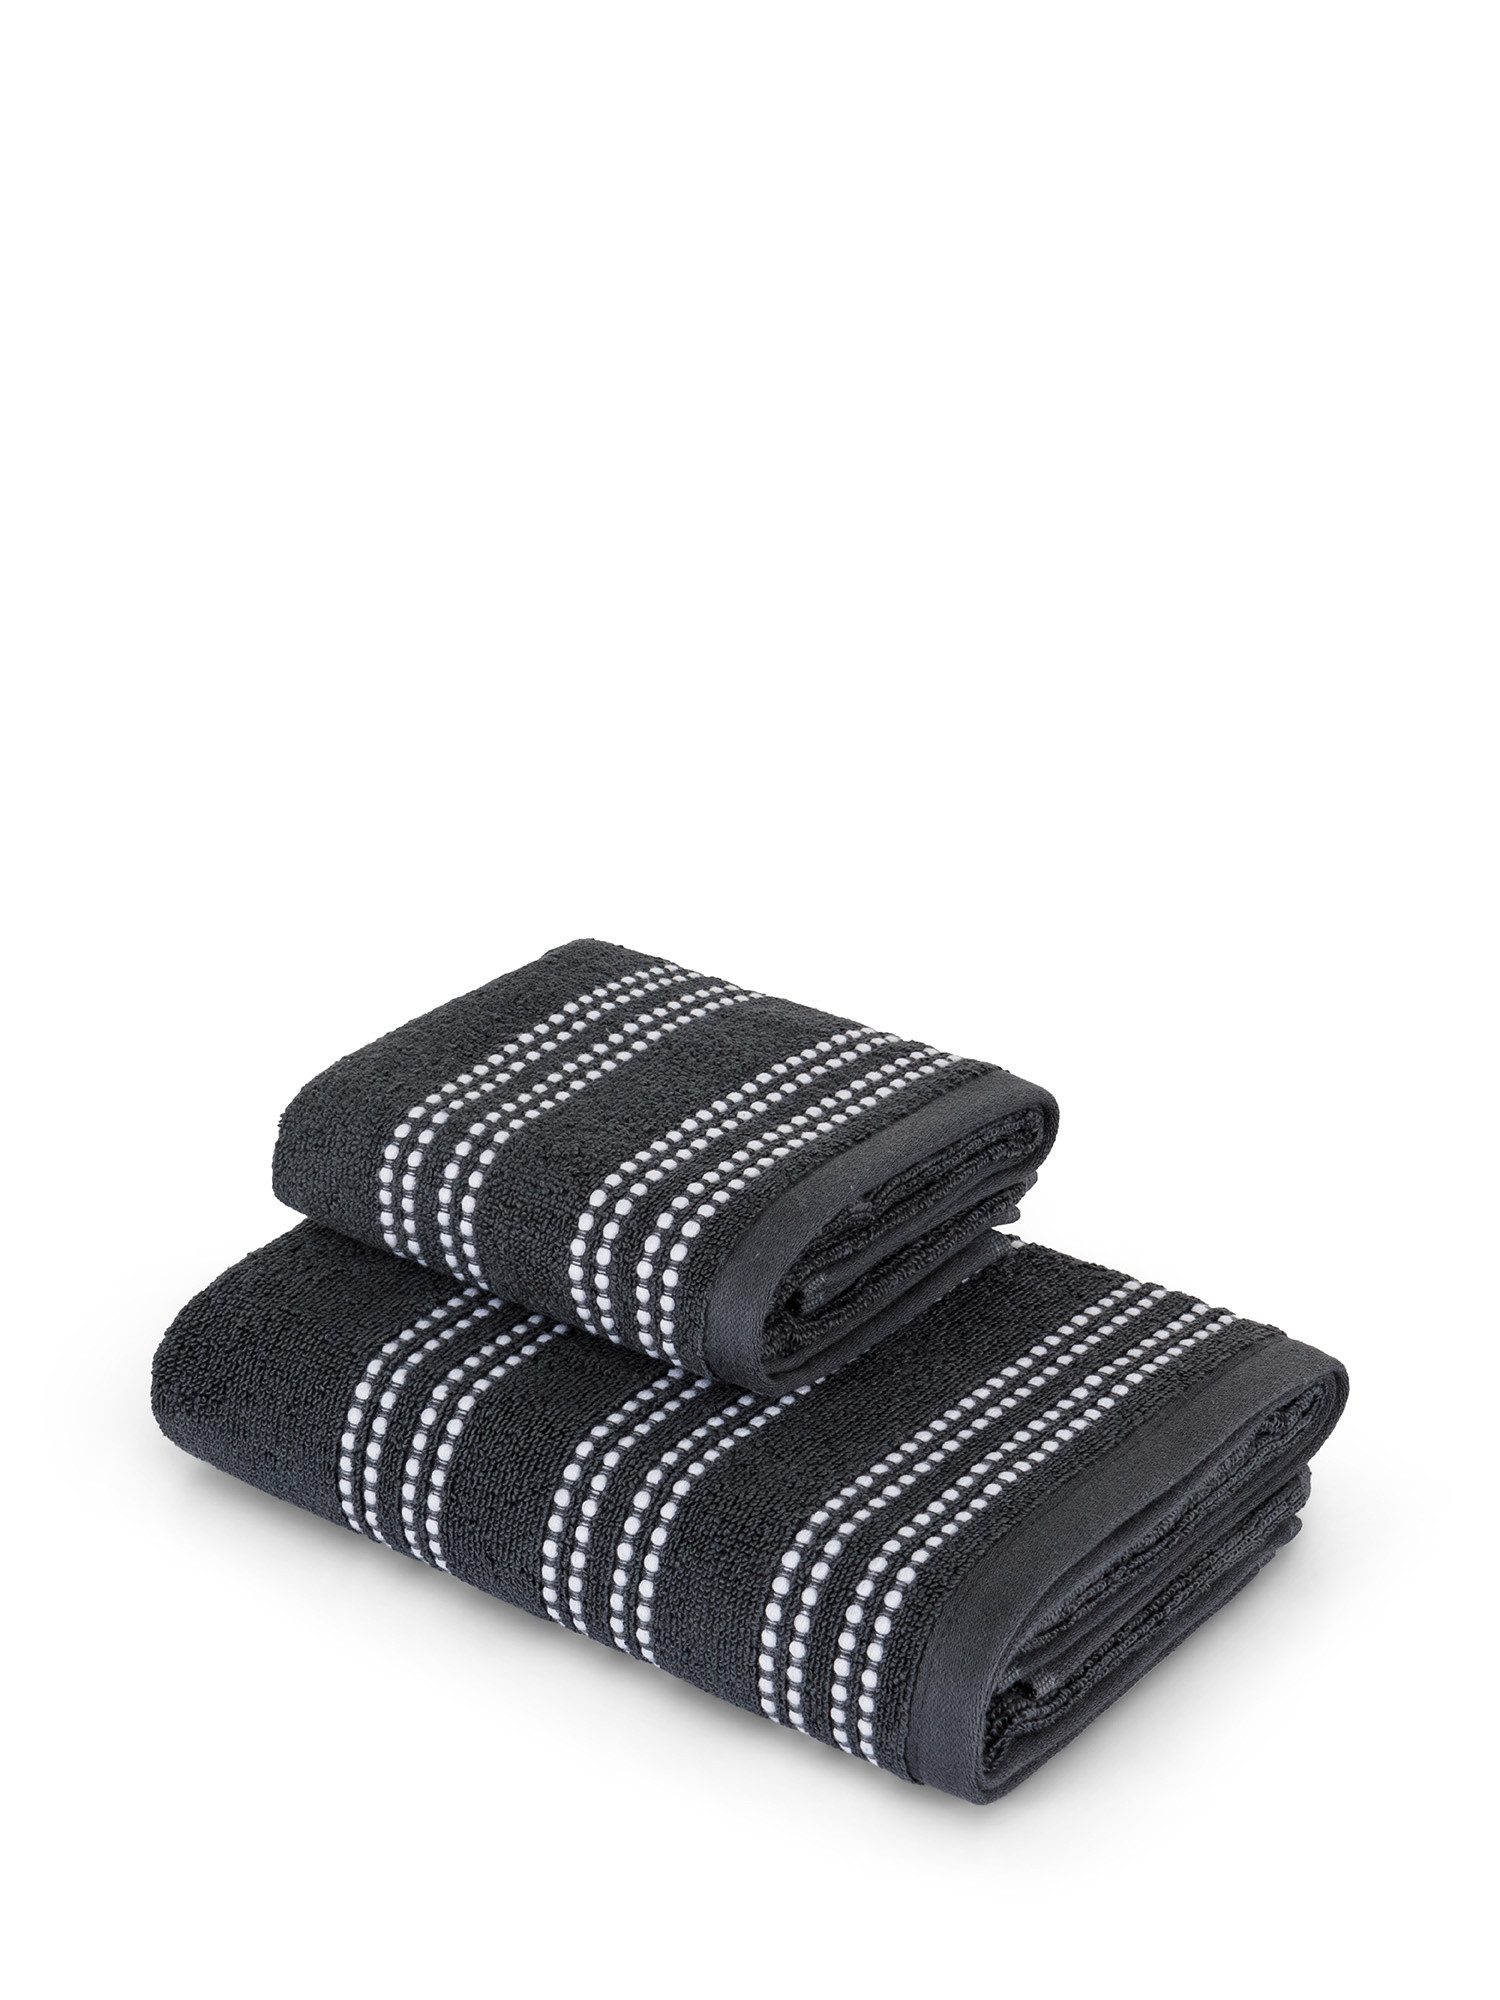 Asciugamano di puro cotone con bordo ricamato, Grigio, large image number 0